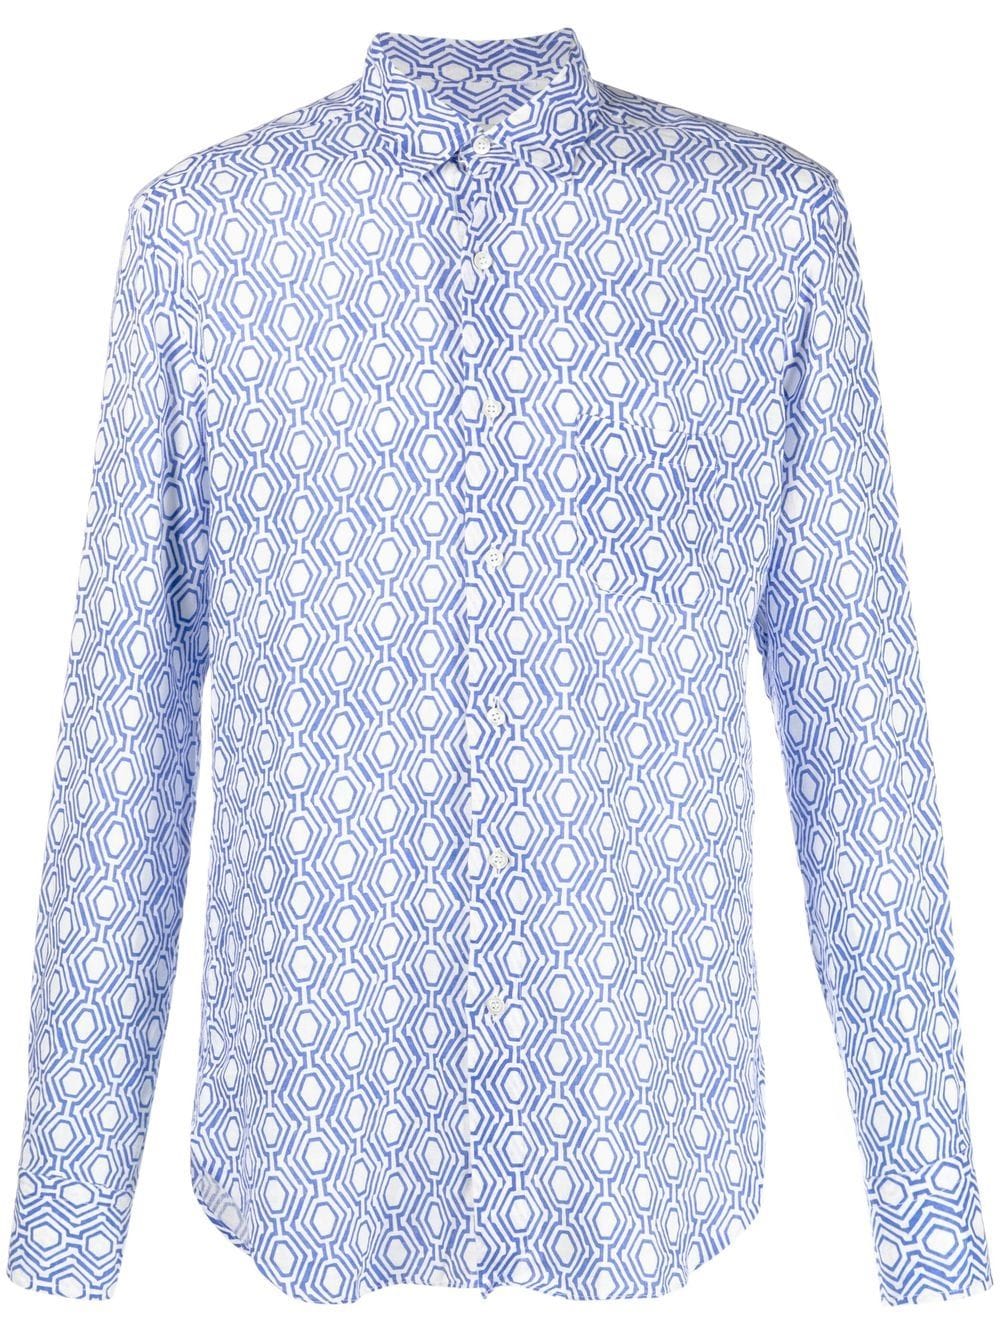 PENINSULA SWIMWEAR all-over graphic-print shirt - Blue von PENINSULA SWIMWEAR